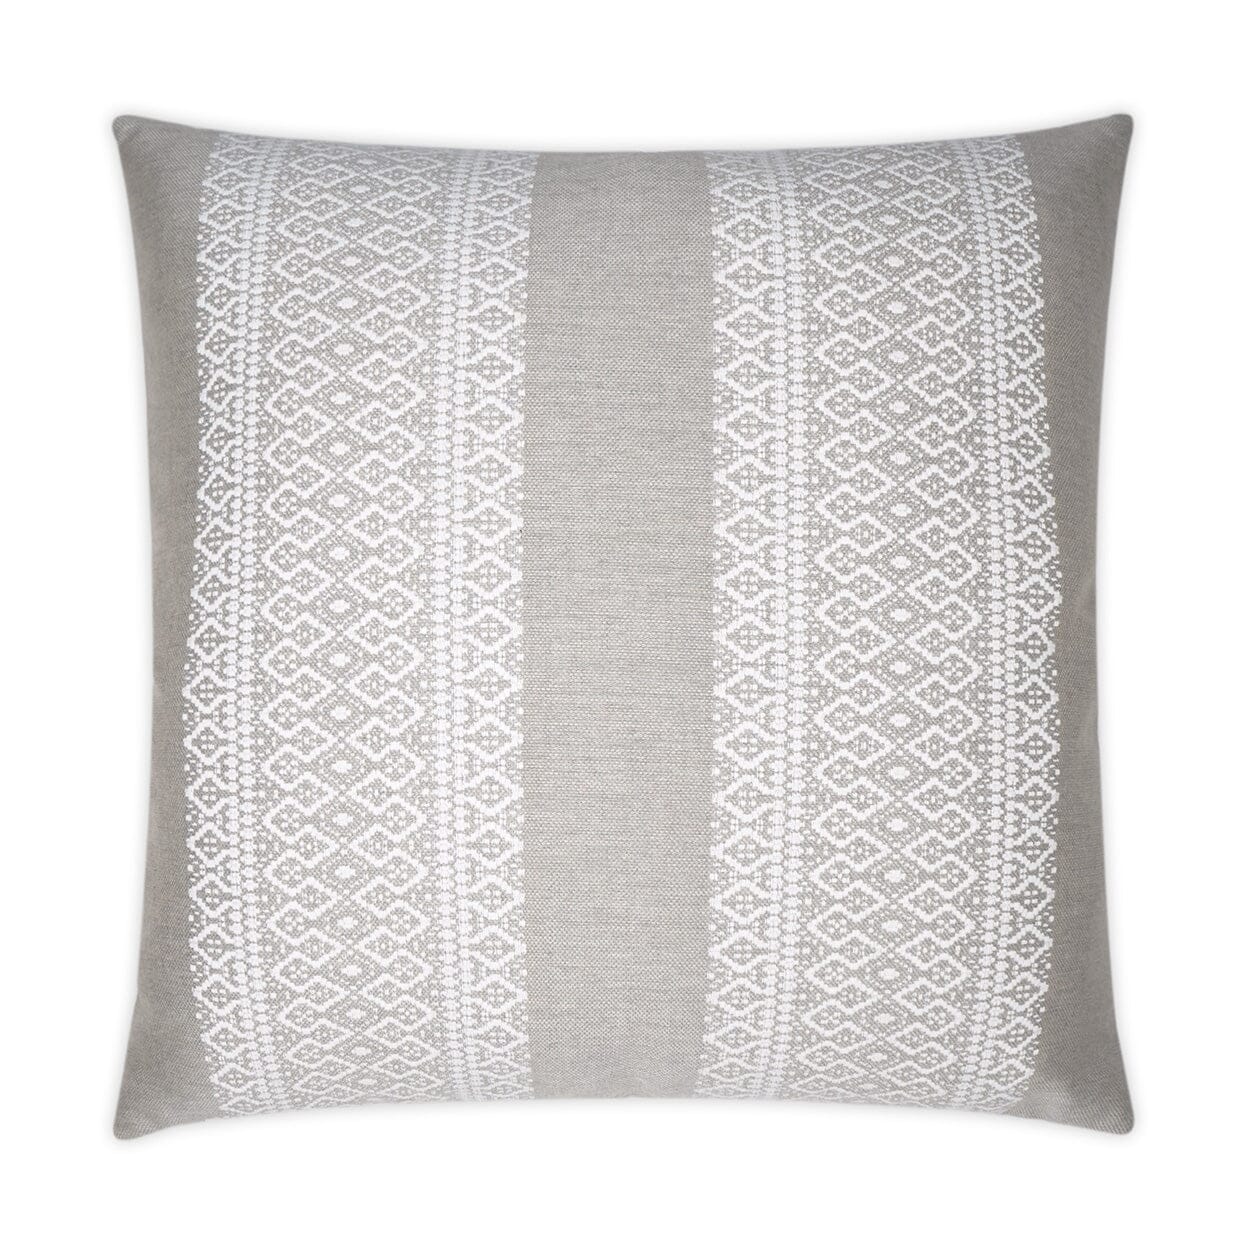 D.V. Kap 22" x 22" Outdoor Throw Pillow | Upton Linen Pillows D.V Kap Outdoor